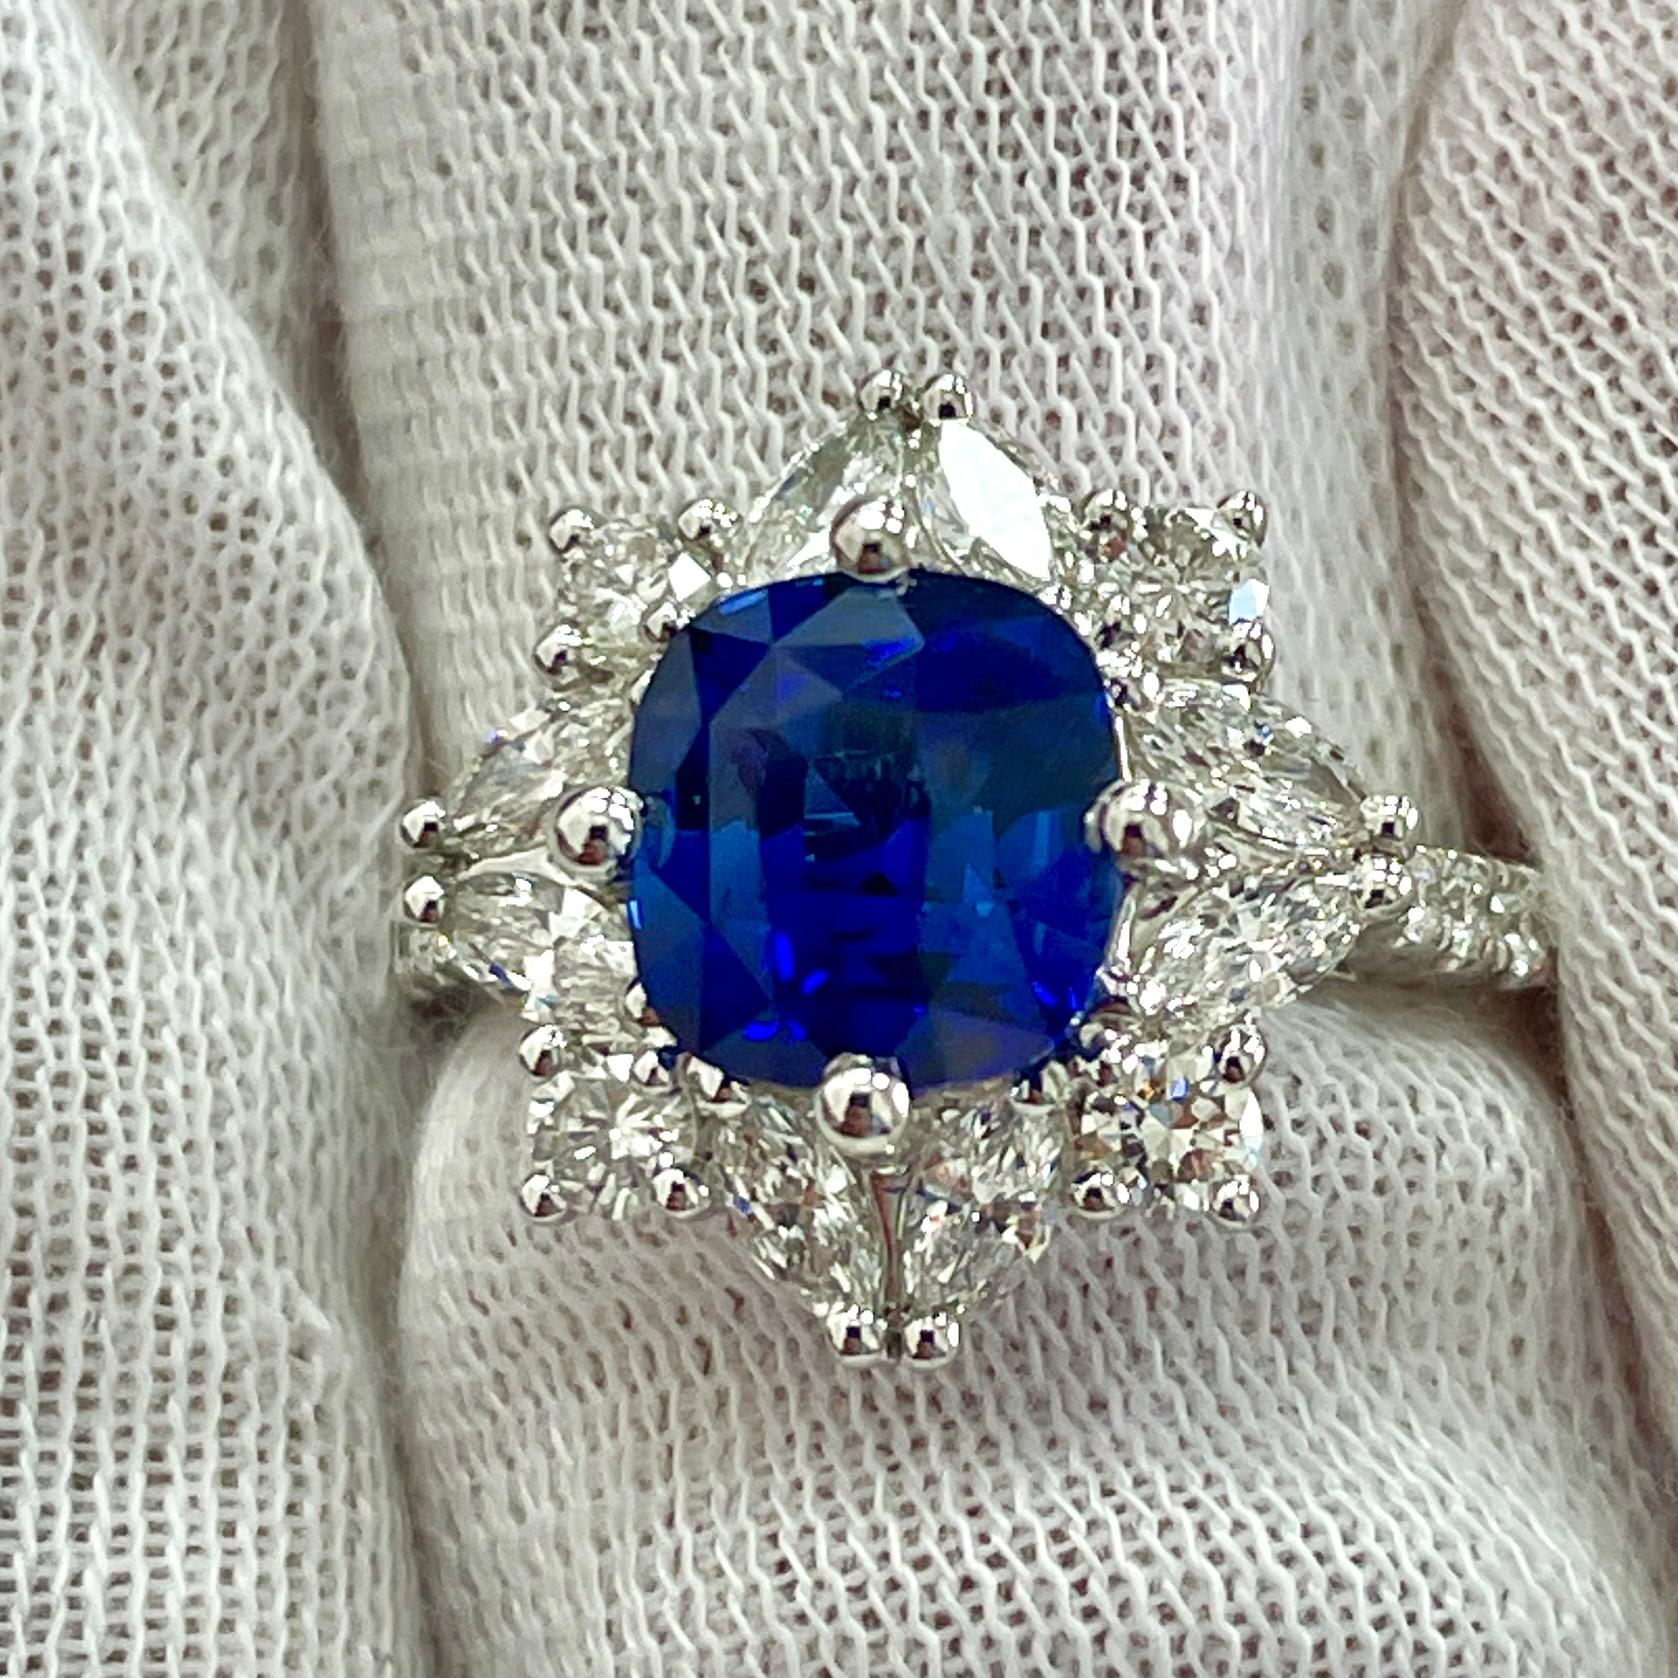 Dies ist ein leuchtend blauer Saphir im Kissenschliff in einem eleganten Ring aus 18 Karat Weißgold mit 0,99 Karat weißen Brillanten. Geeignet für jede Gelegenheit!